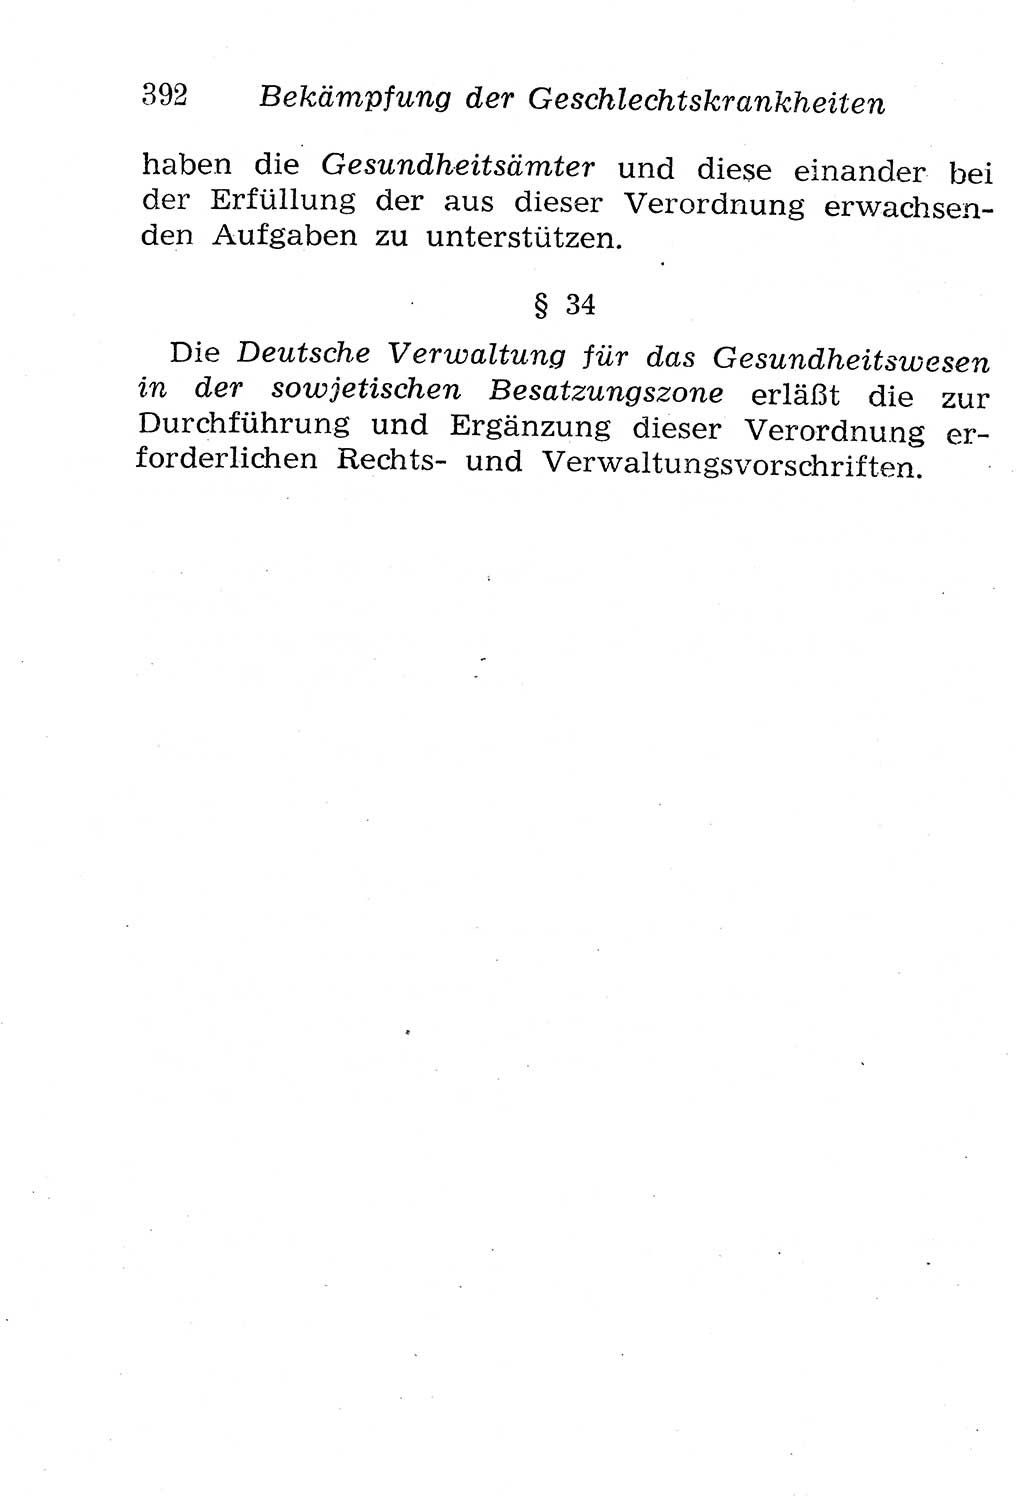 Strafgesetzbuch (StGB) und andere Strafgesetze [Deutsche Demokratische Republik (DDR)] 1958, Seite 392 (StGB Strafges. DDR 1958, S. 392)